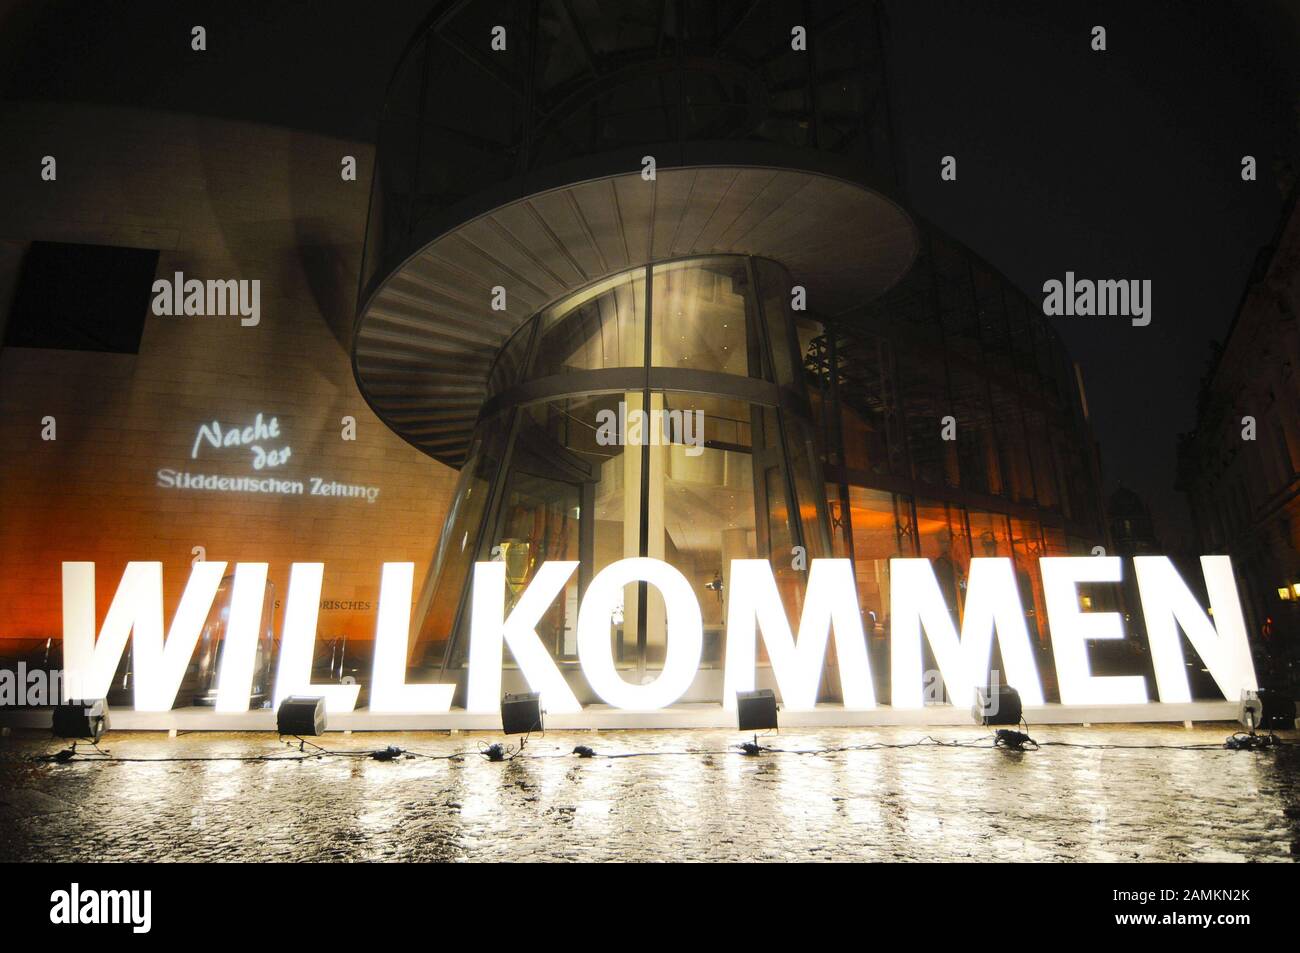 Im festlich beleuchteten Pei-Anhang des Deutschen Historischen Museums findet die "Nacht der Süddeutschen Zeitung" statt. [Automatisierte Übersetzung] Stockfoto